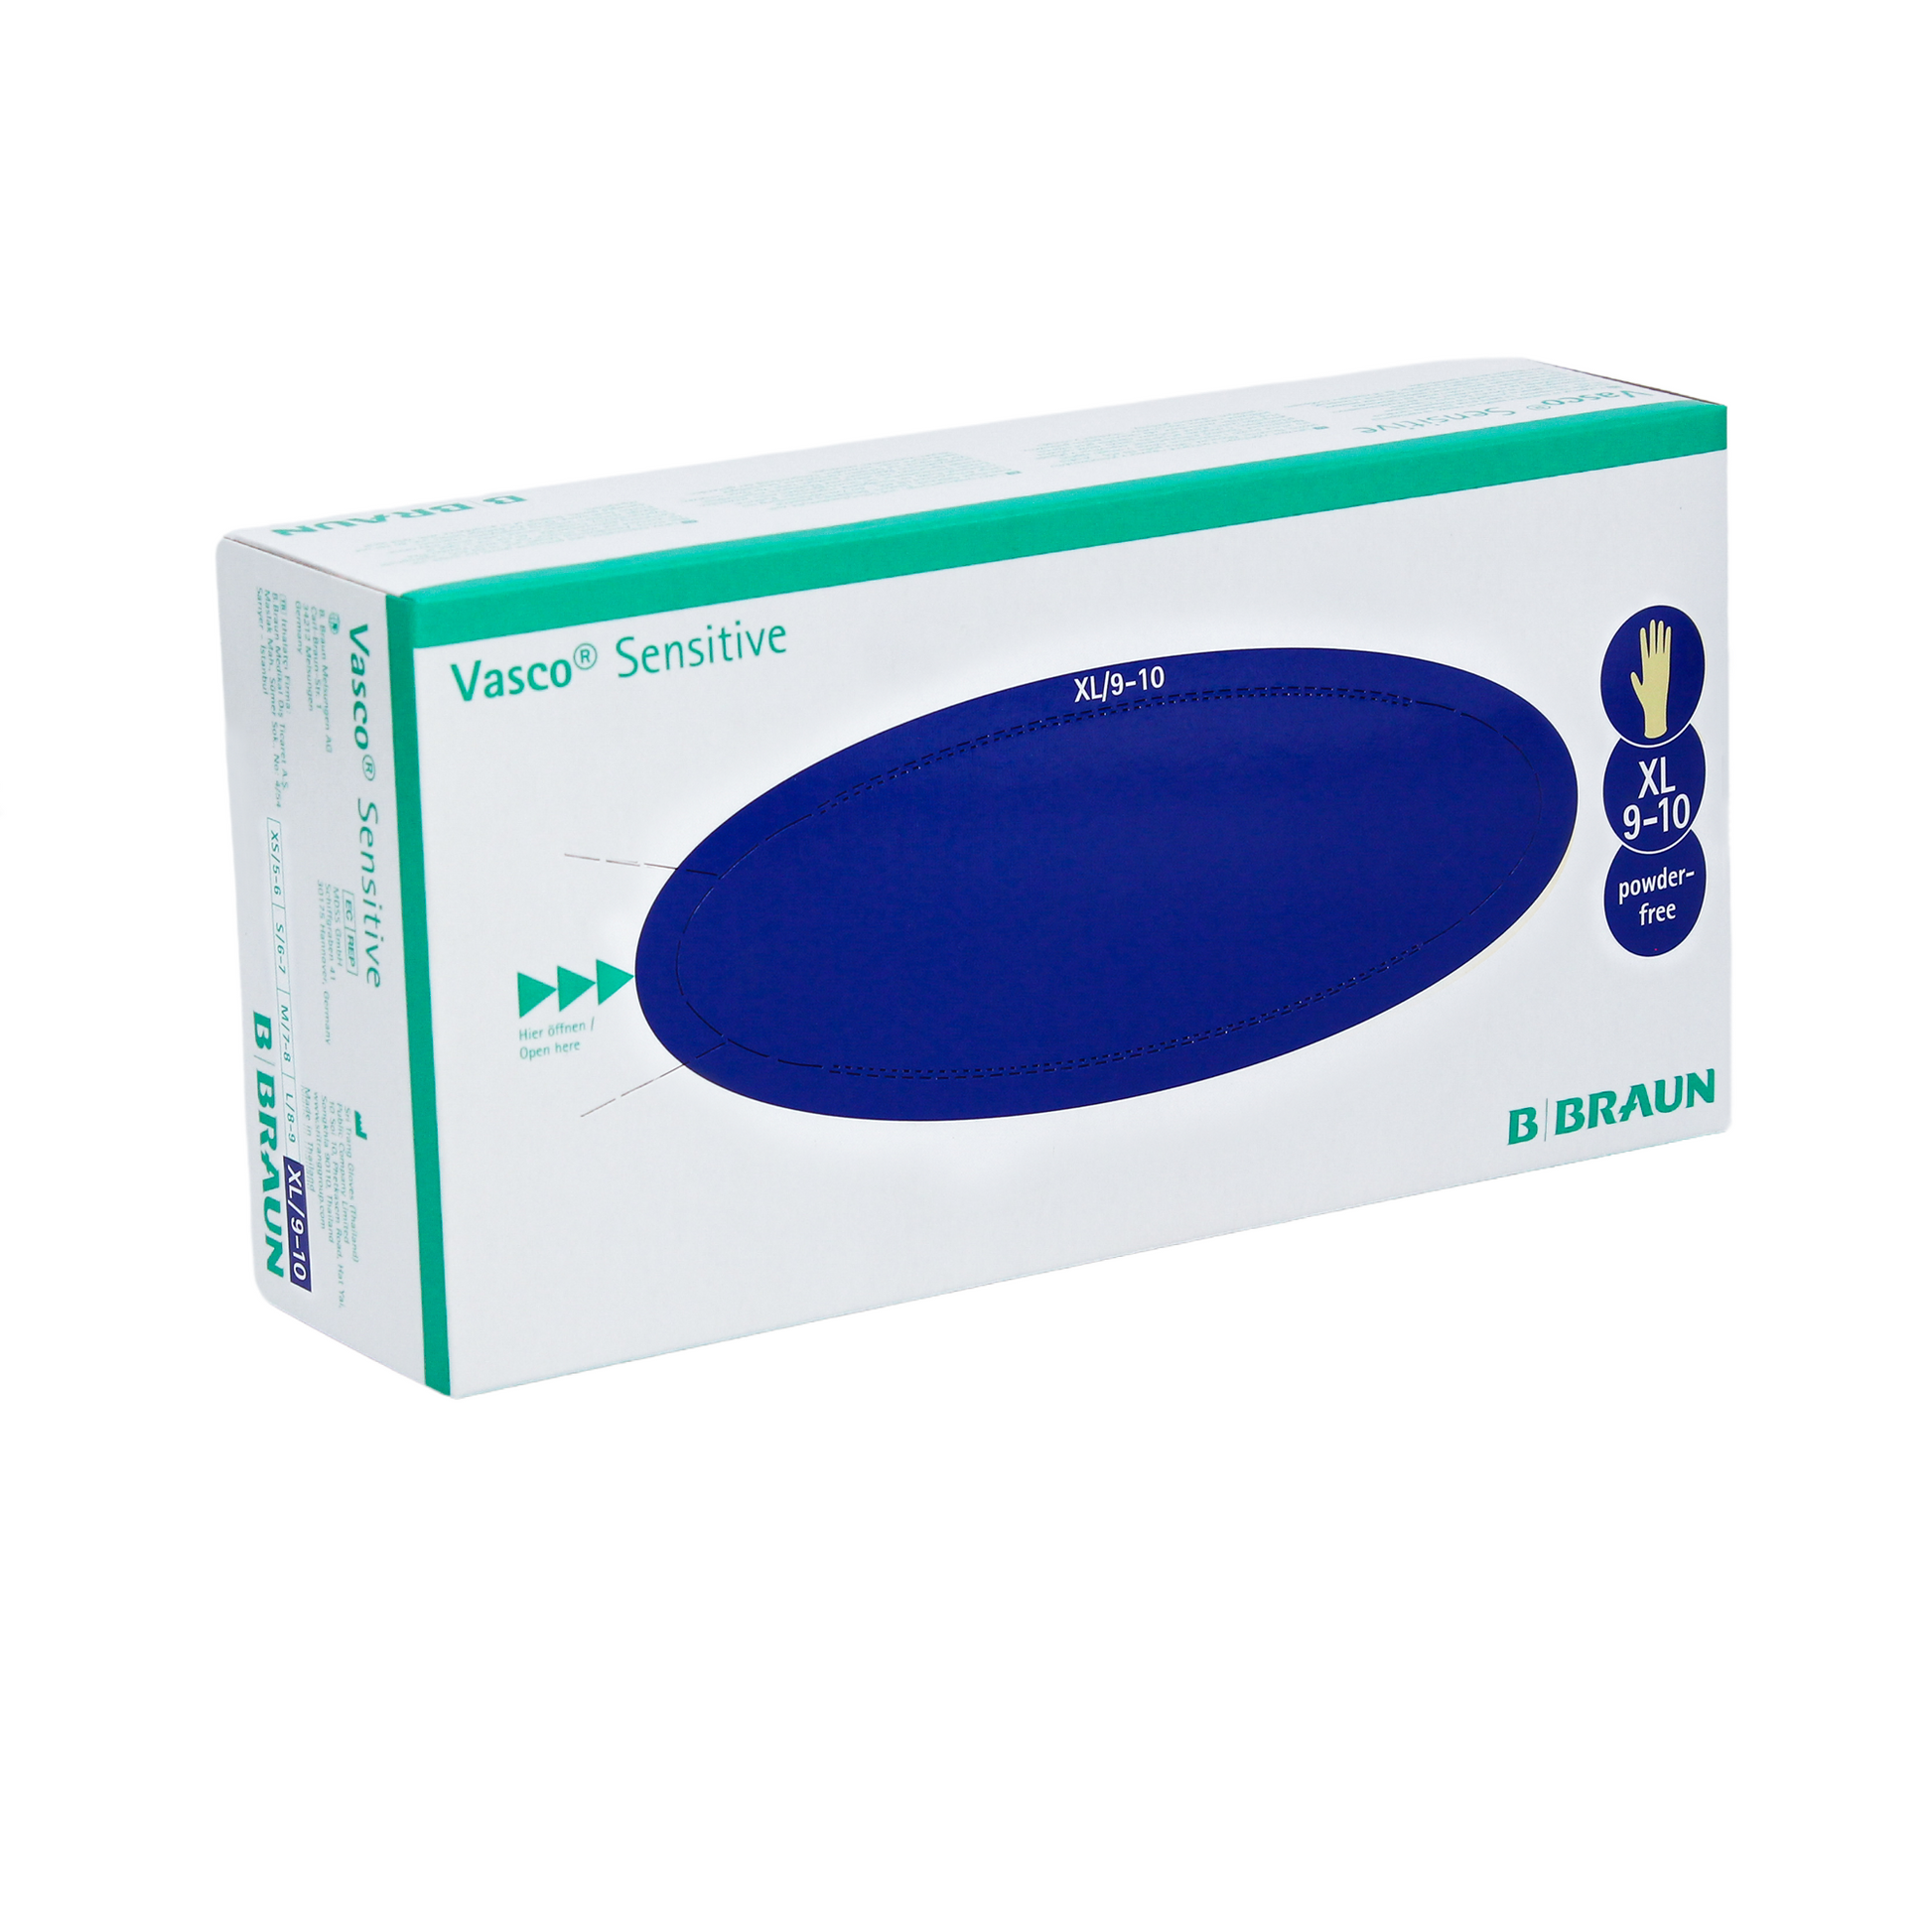 Eine Schachtel B. Braun Vasco® Sensitive Latex- Untersuchungshandschuhe, XL Größe 9-10 Nitril Einmalhandschuhe von B. Braun Melsungen AG, gekennzeichnet als puderfrei. Die Verpackung ist hauptsächlich weiß mit einem blauen